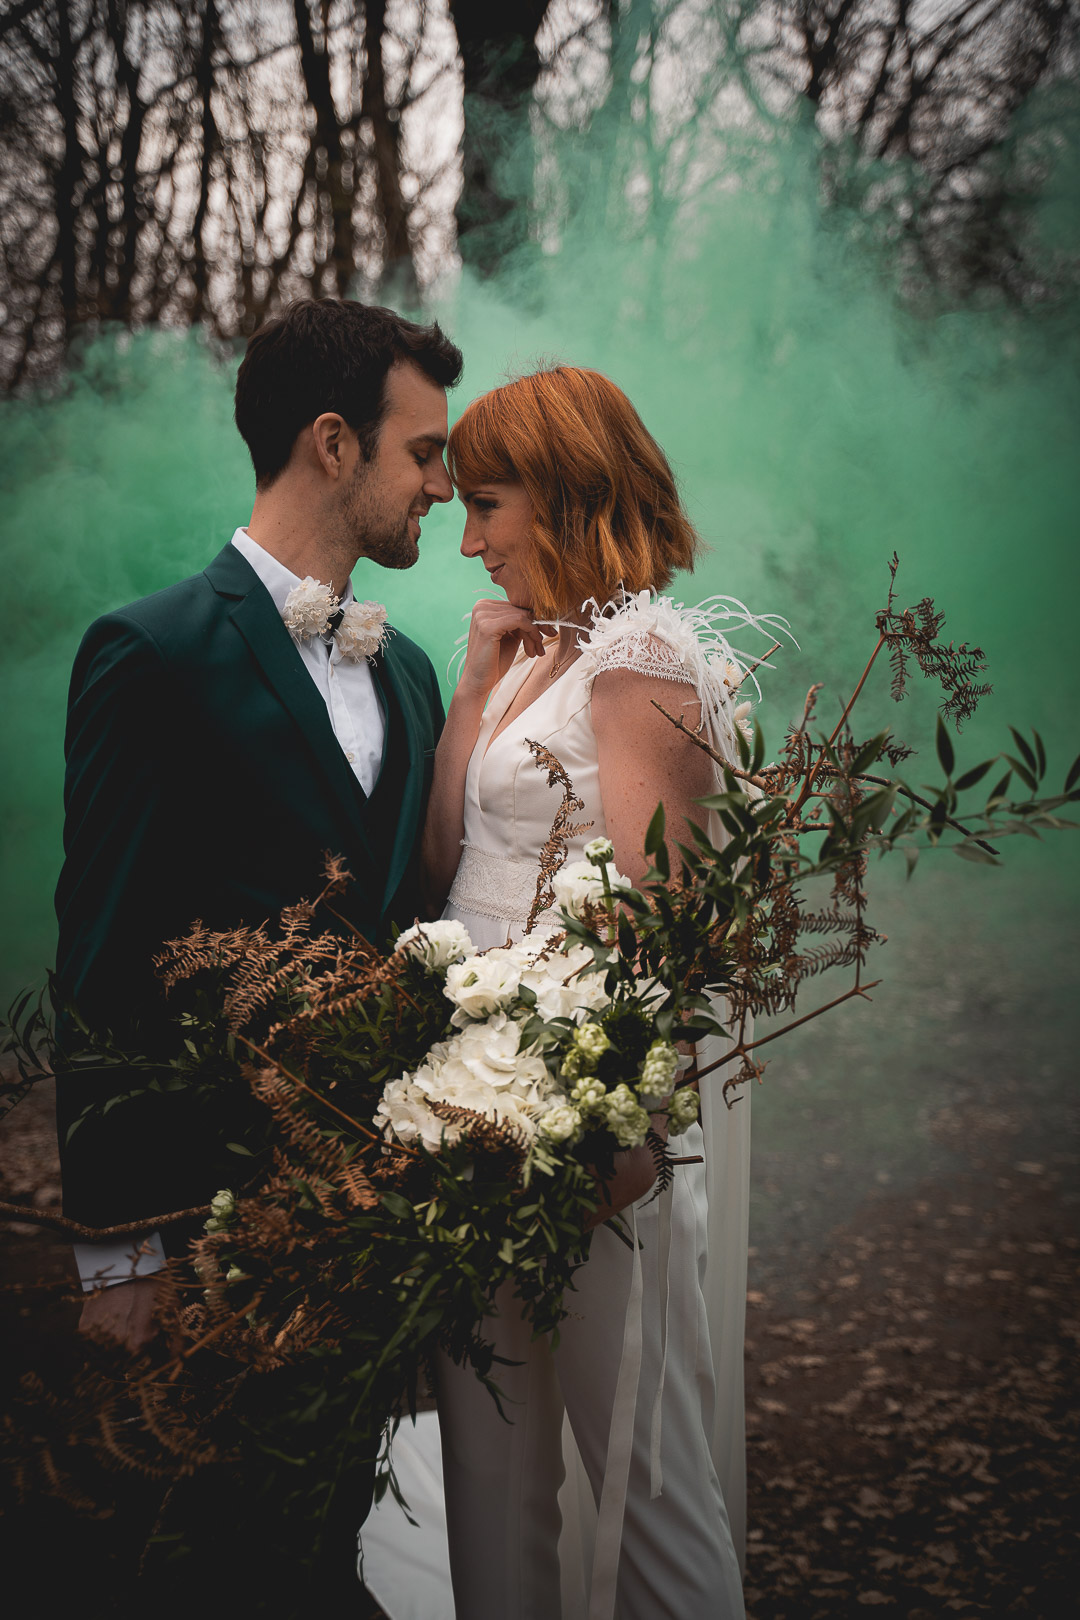 se marier en automne, photos de couple fumigene vert en forêt